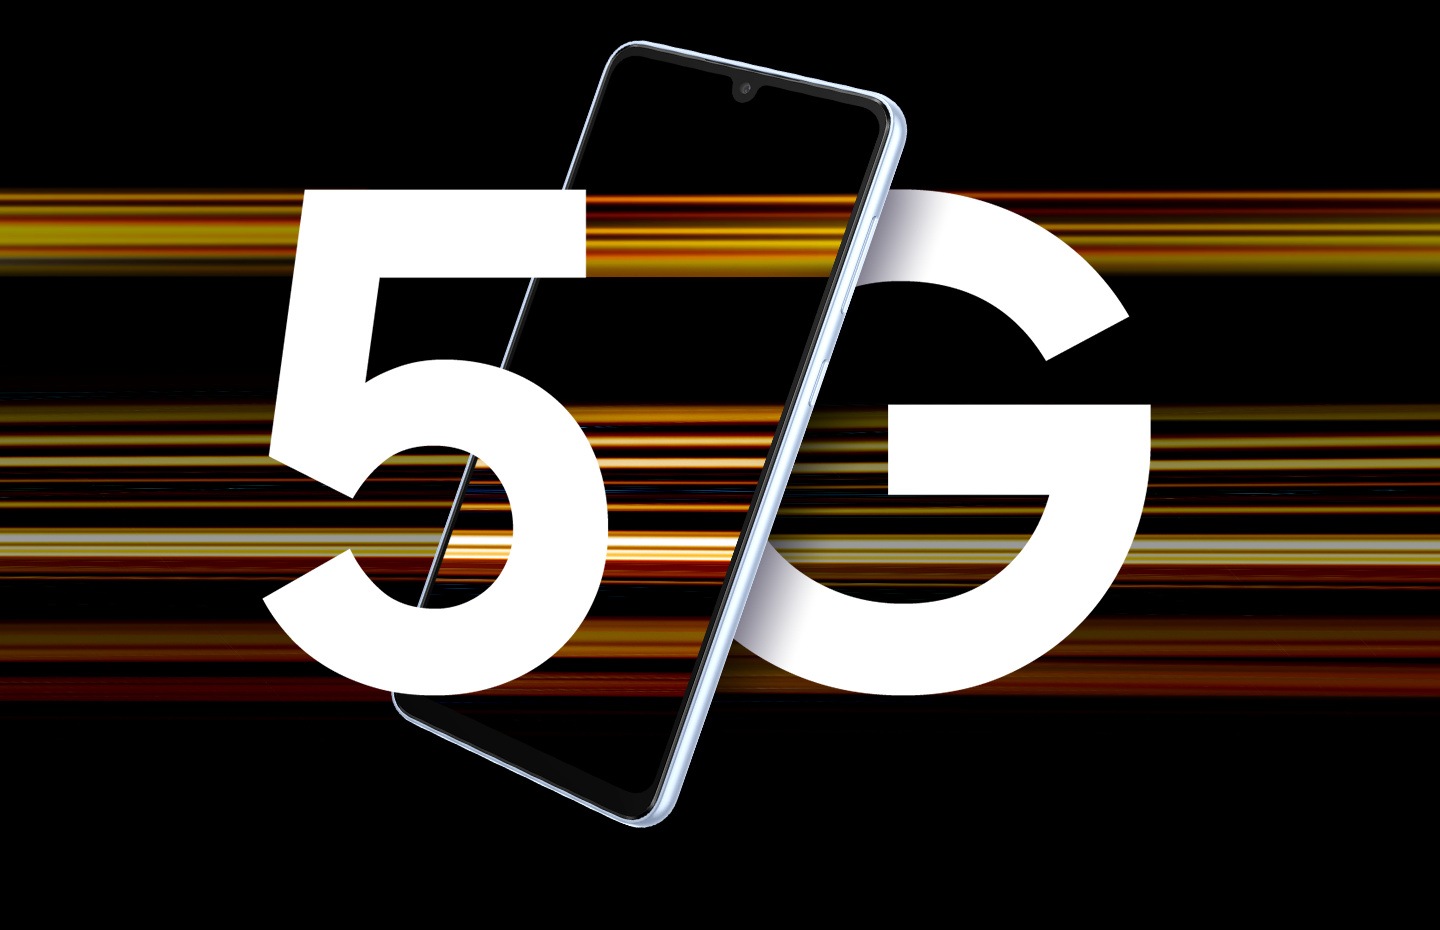 Galaxy A33 5G uređaj je prikazan sa tekstom 5G podijeljenim na slova pored uređaja. Šarene pruge svjetlosti ga okružuju da predstave brzinu 5G.